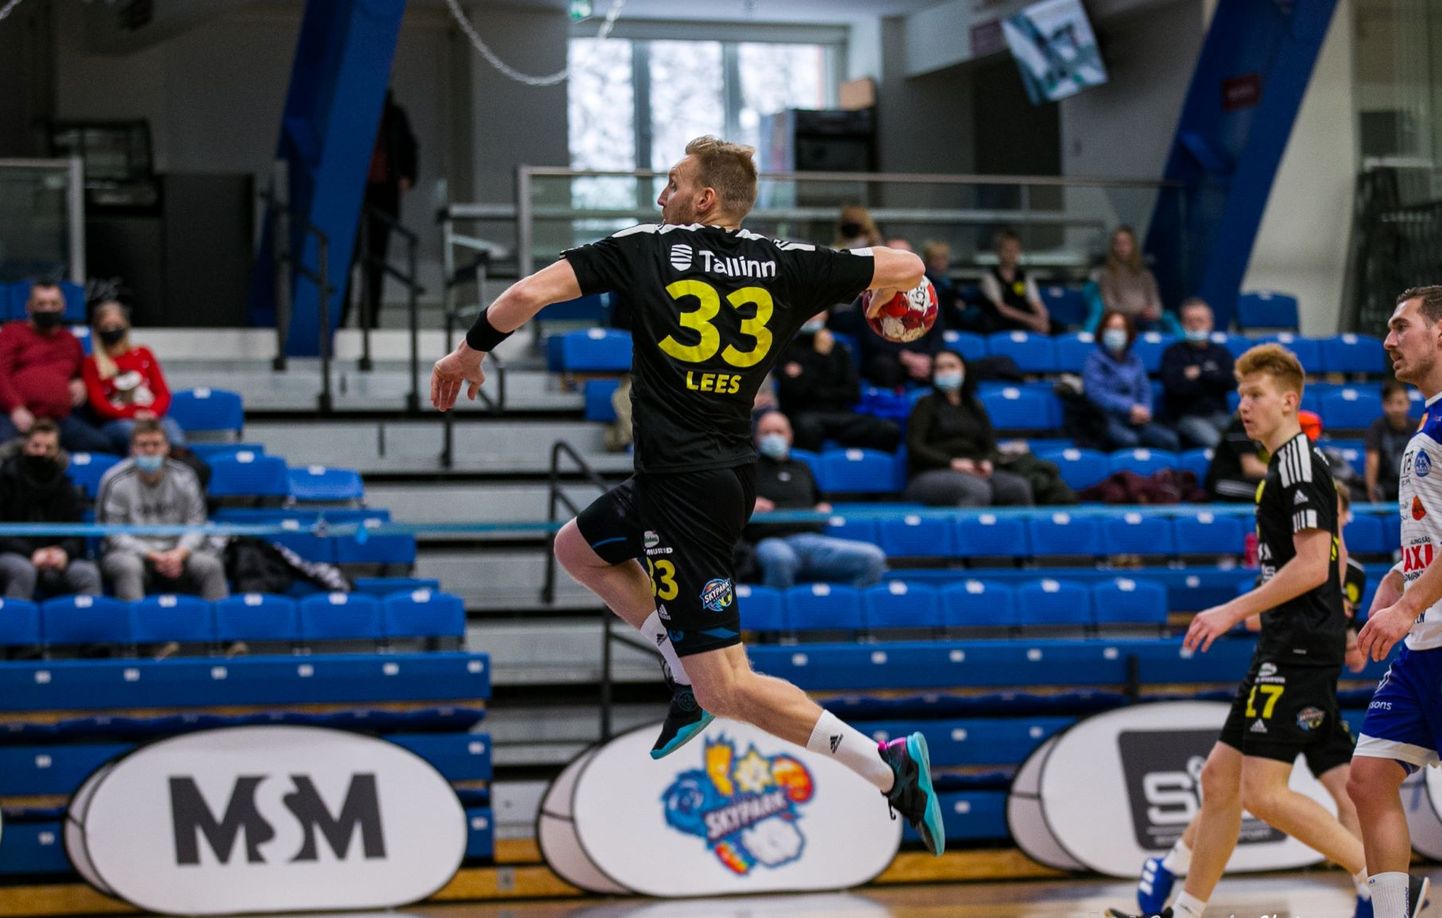 HC Tallinna täpseim oli viigimängus Alingsås HK vastu Kaspar Lees kümne väravaga.